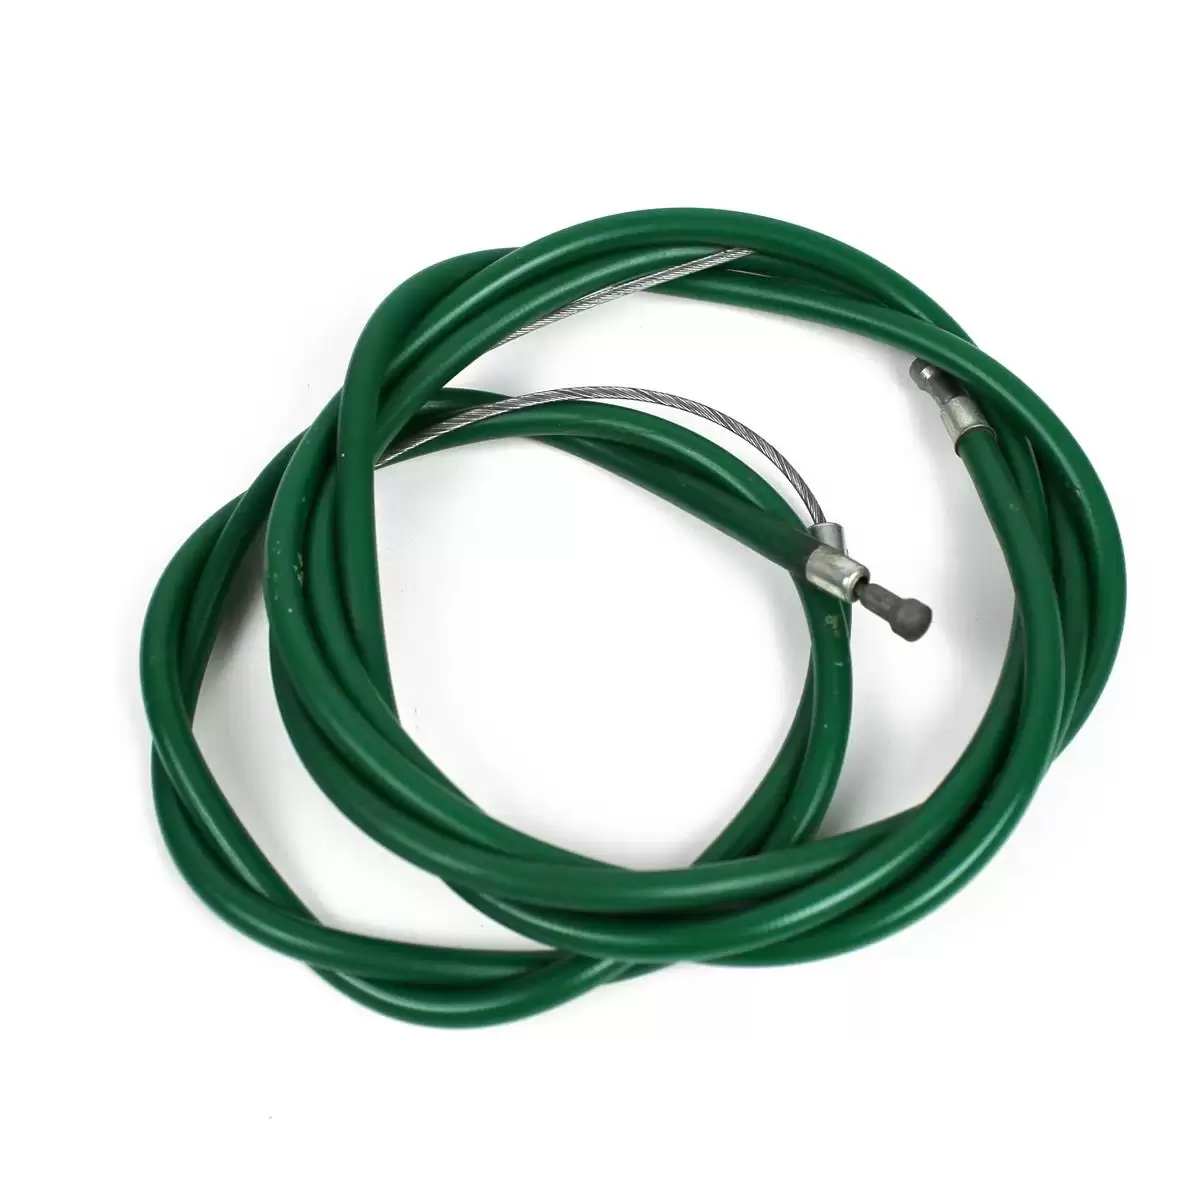 Kit carcasa y cable de freno delantero y trasero vintage verde heroico - image